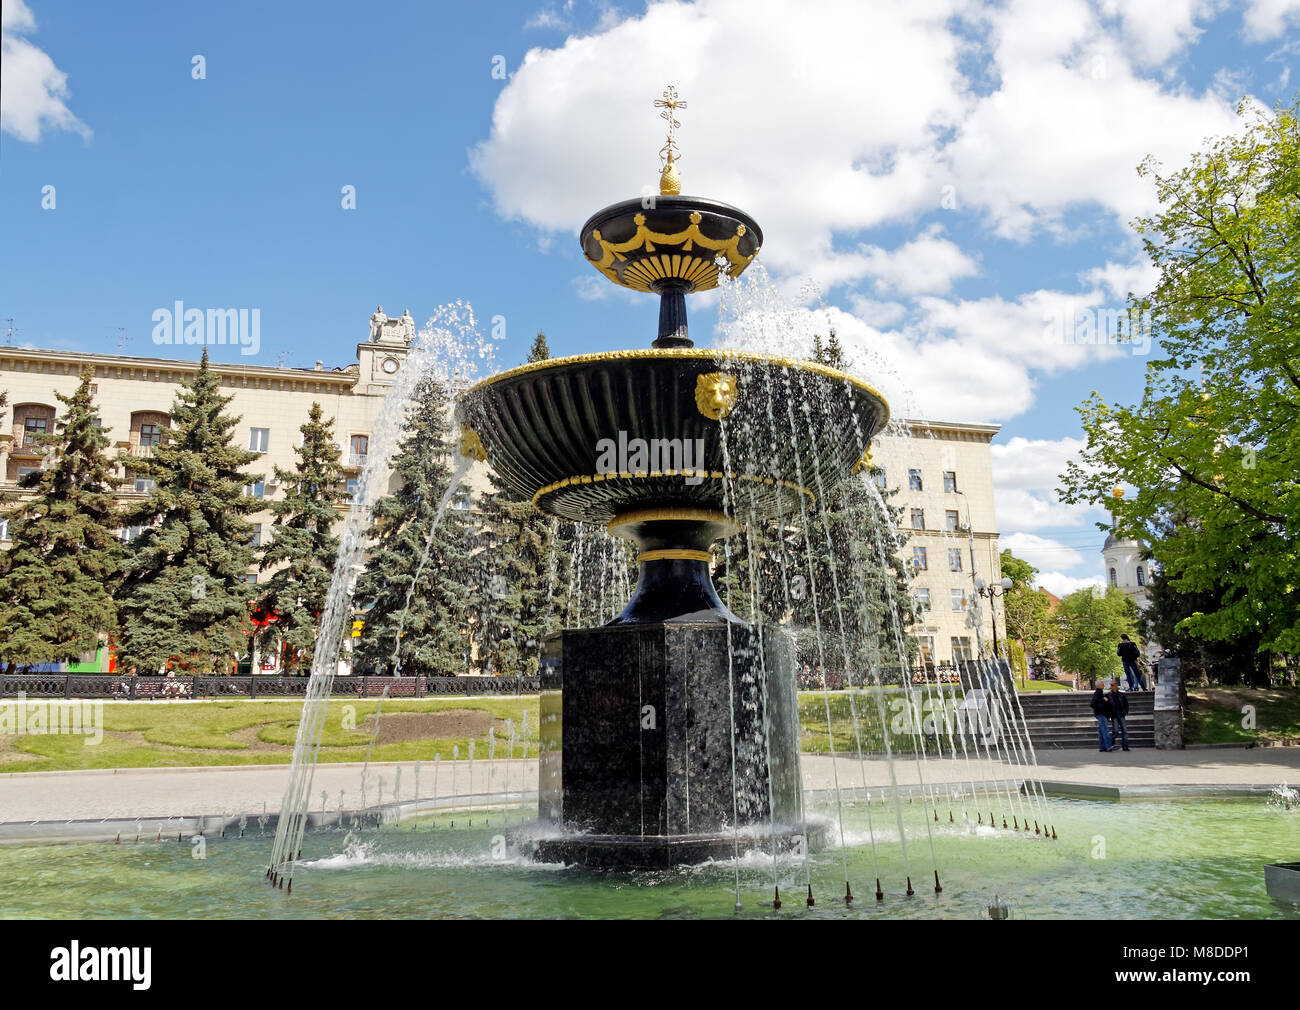 La fontaine sur la place près de la cathédrale de la Dormition à Kharkiv, Ukraine Banque D'Images